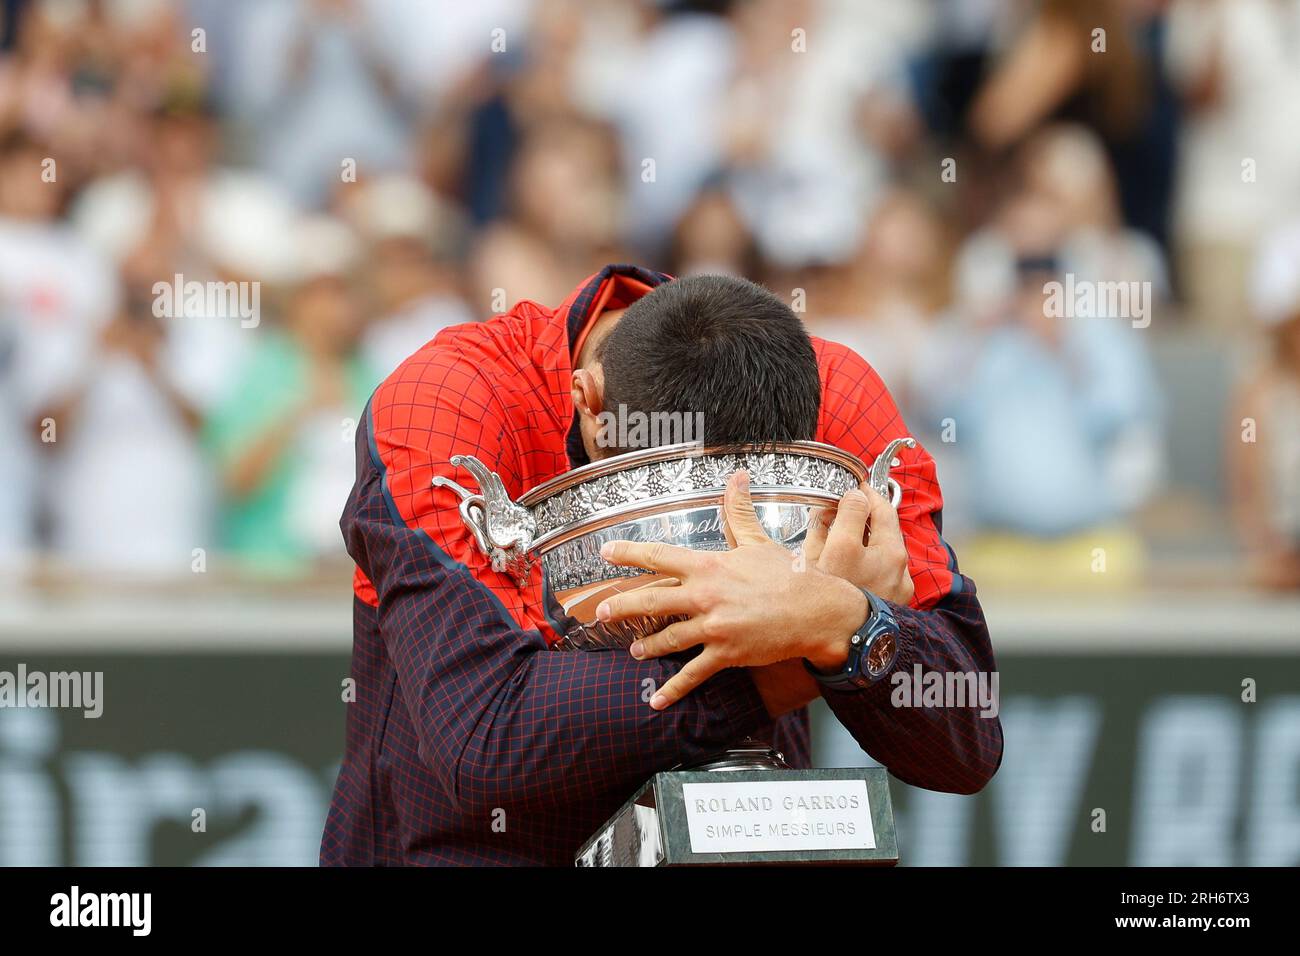 Der serbische Tennisspieler Novak Djokovicis setzt seinen Kopf in die Meisterschafts-Trophäe und ist jetzt der Rekordhalter mit 23 Grand Slams, nachdem er den gewonnen hat Stockfoto